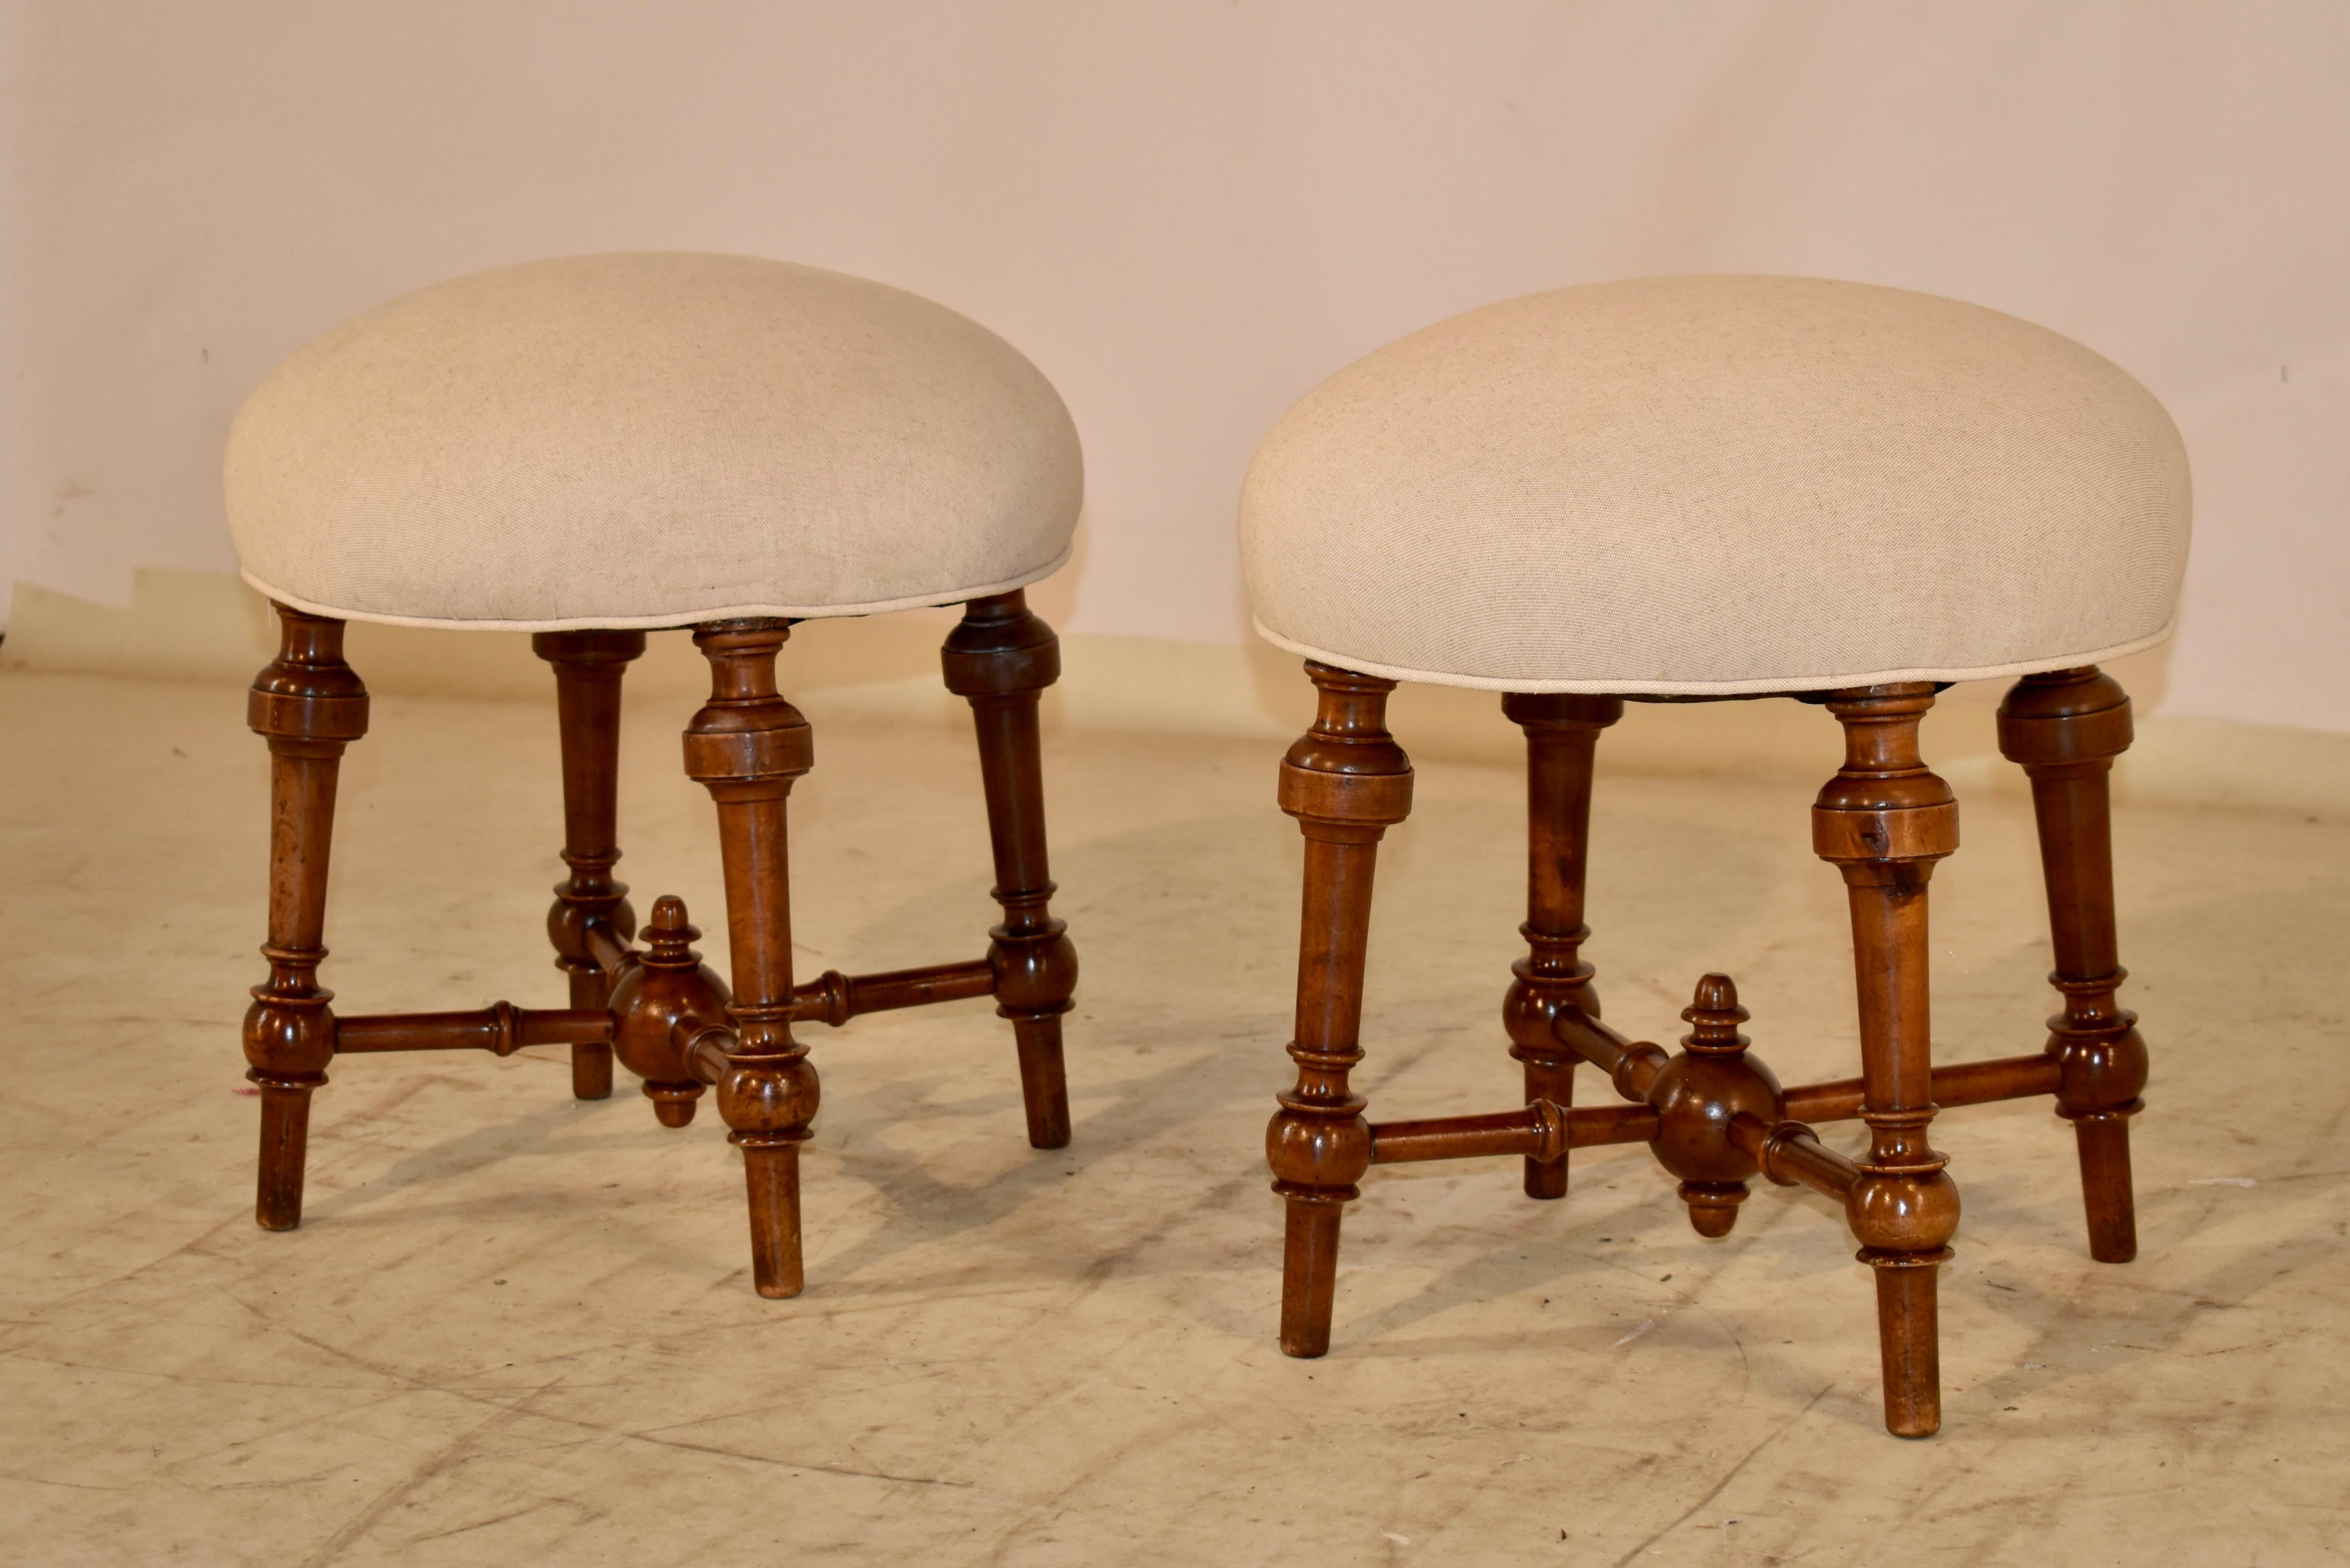 Paar Hocker aus Nussbaumholz des 19. Jahrhunderts aus Frankreich.  Die Sitze sind neu mit Leinen gepolstert und mit einer einfachen Kederverzierung versehen worden.  Die Sitze sind rund und sitzen auf einem massiven Nussbaumrahmen mit gespreizten